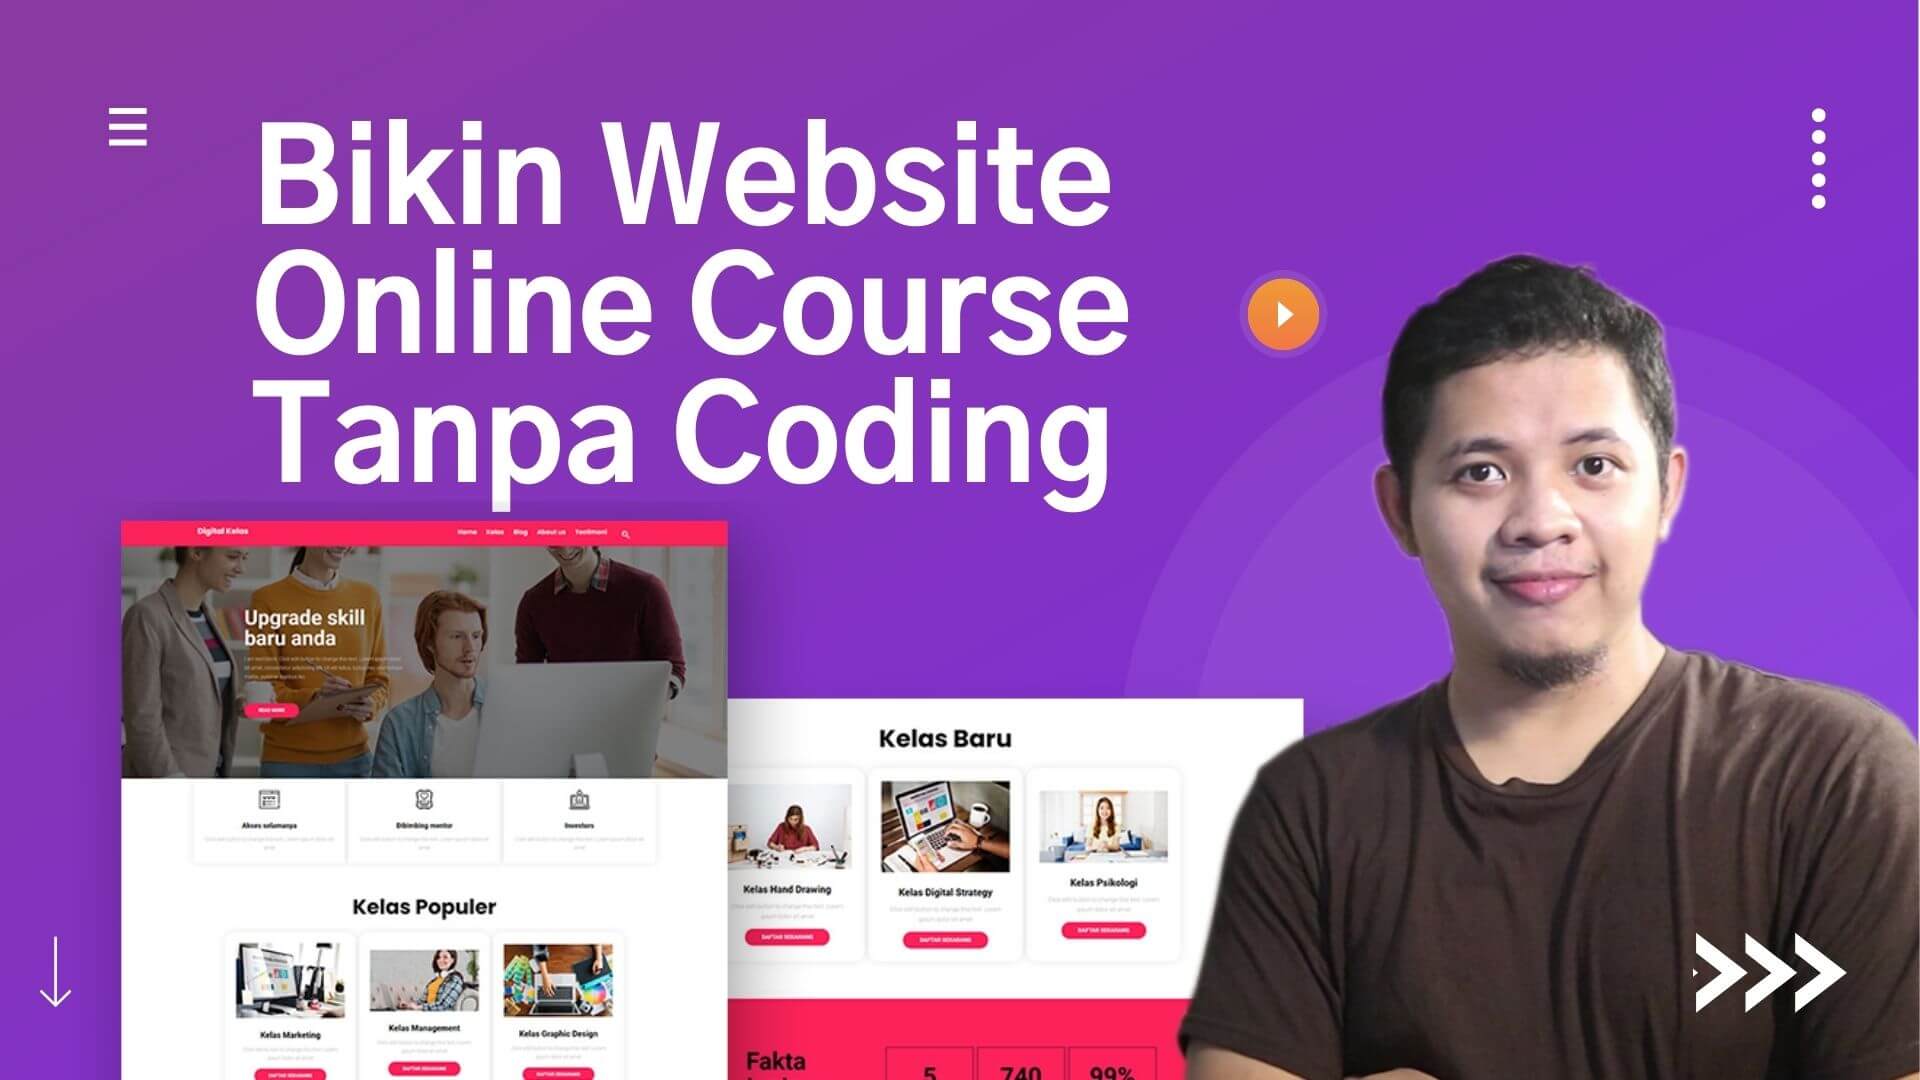 Cara membuat website online course mudah tanpa coding dengan WordPress + Elementor